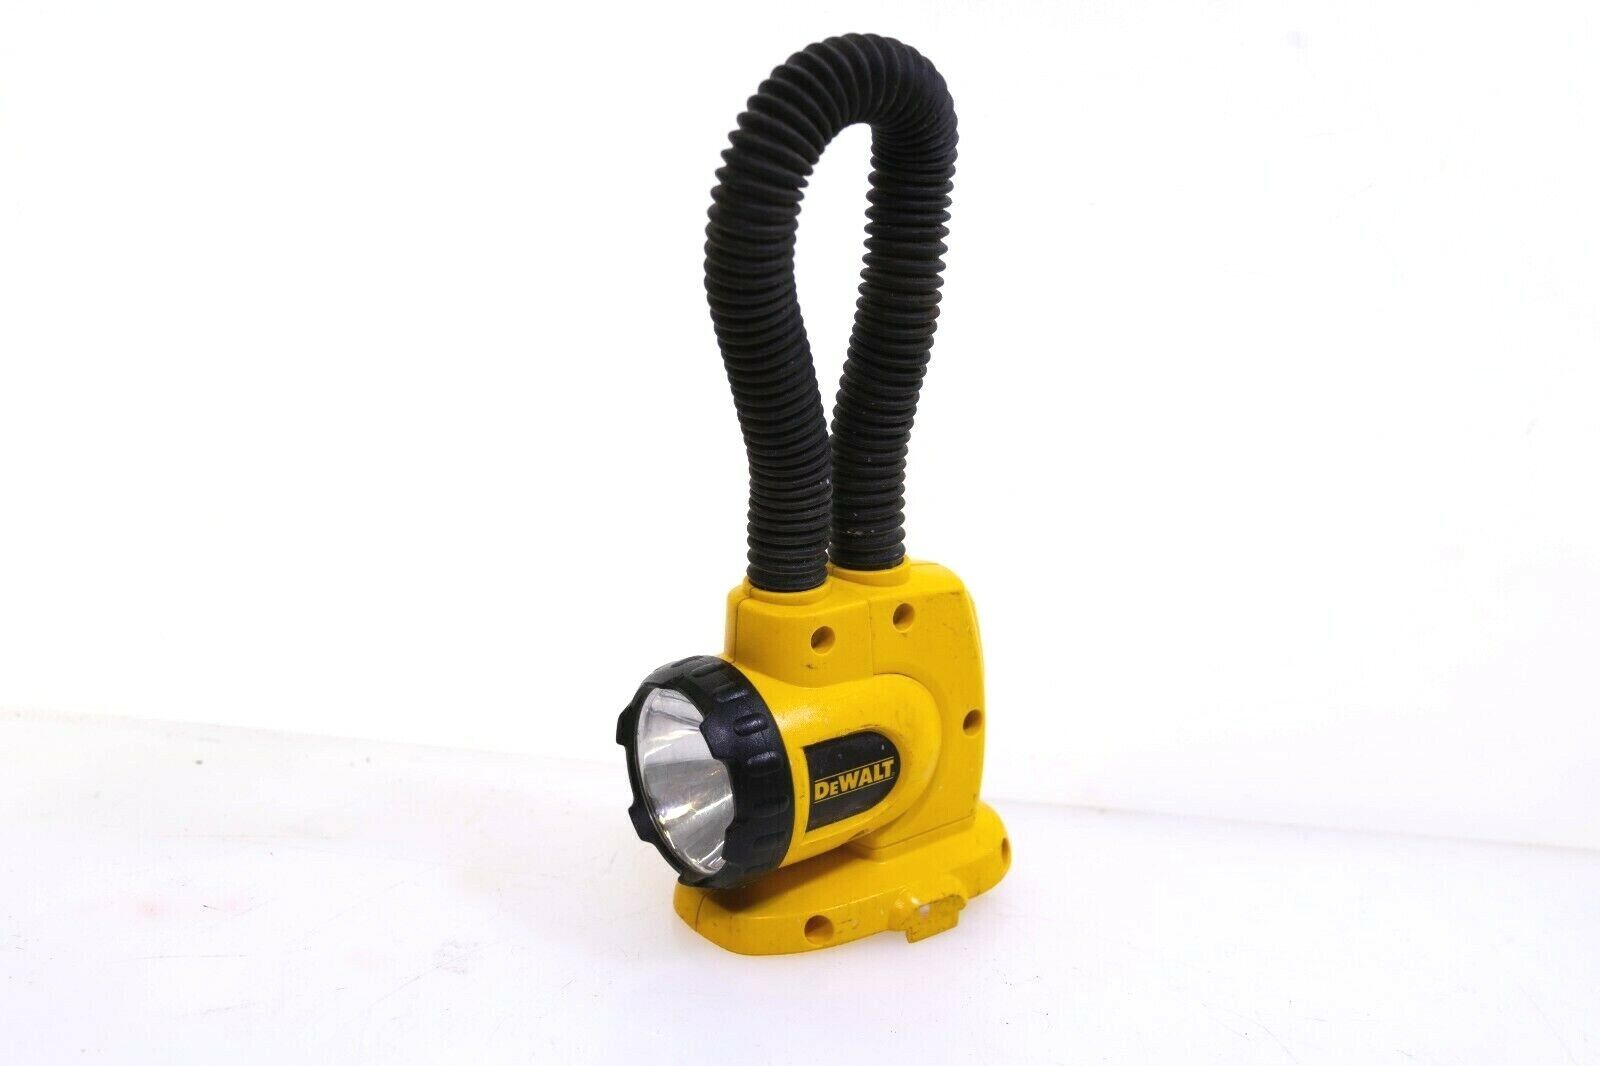 DeWALT DW919 18V Volt Cordless Flexible Floodlight/Flashlight, Bare Tool